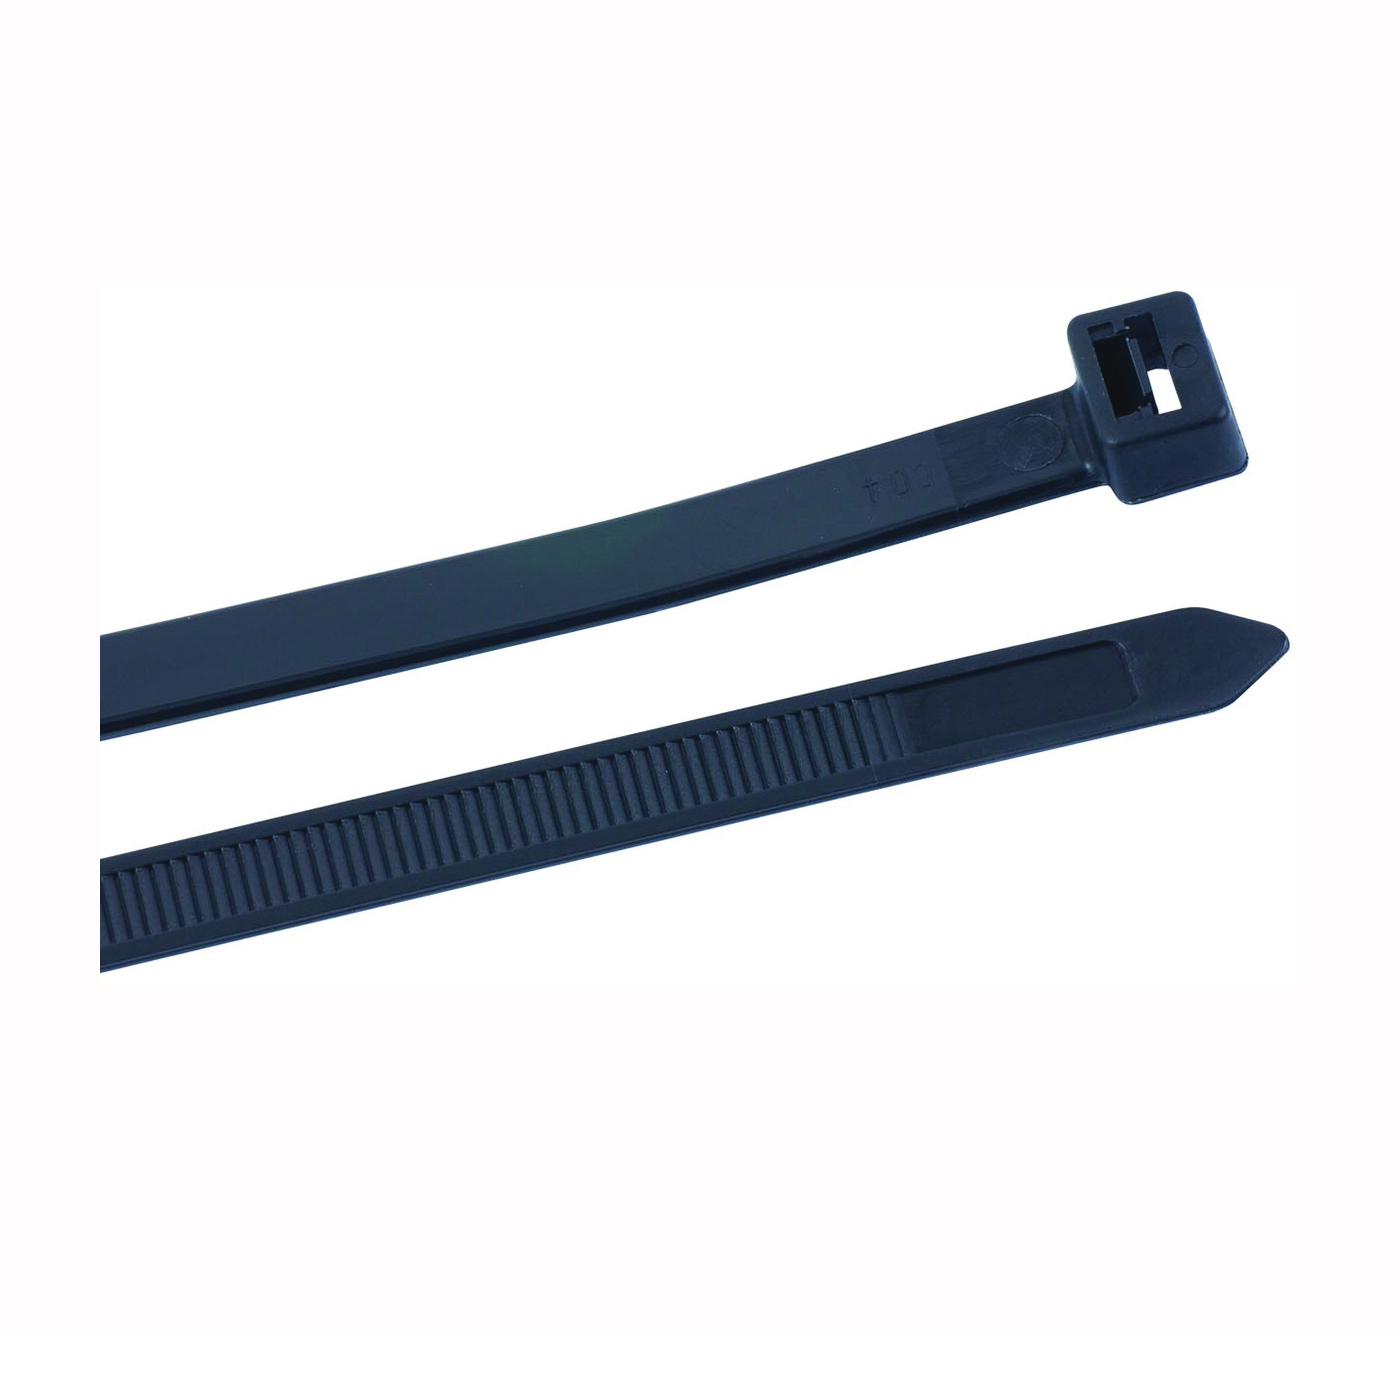 45-524UVB Cable Tie, 6/6 Nylon, Black